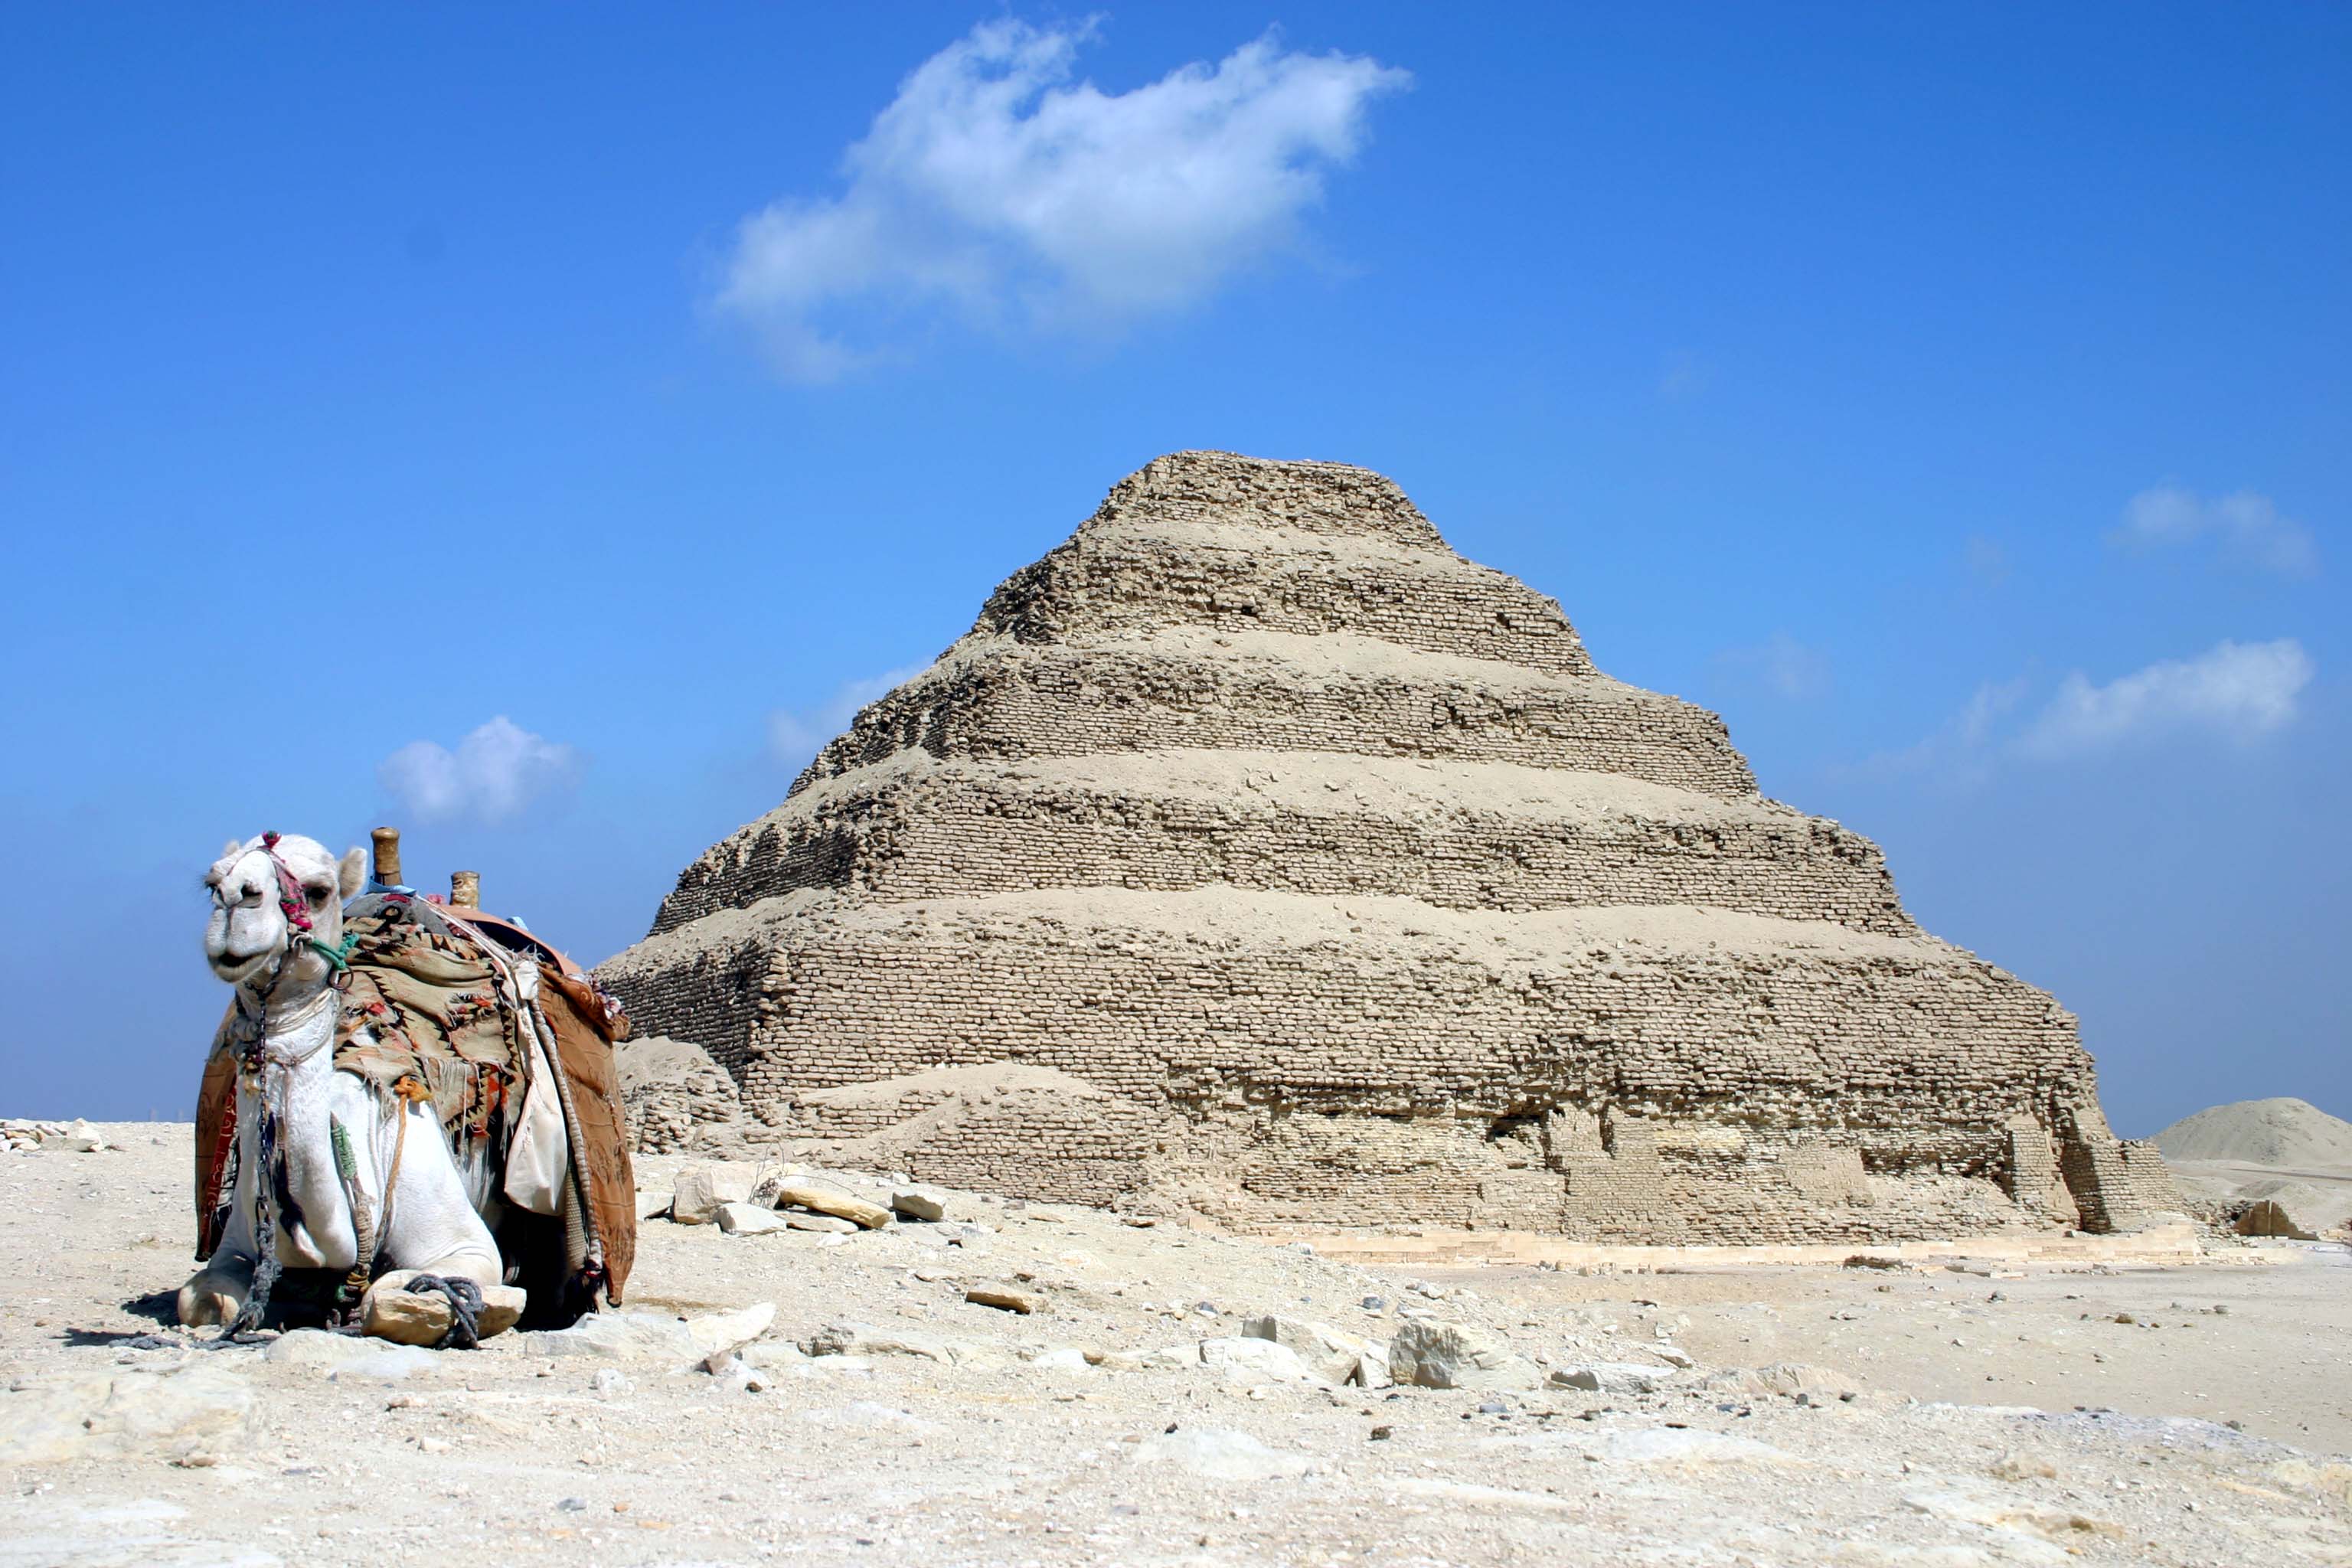 Džoserova stupňovitá pyramida.  Kredit: Berthold Werner, Wikipedia,CC BY-SA 3.0